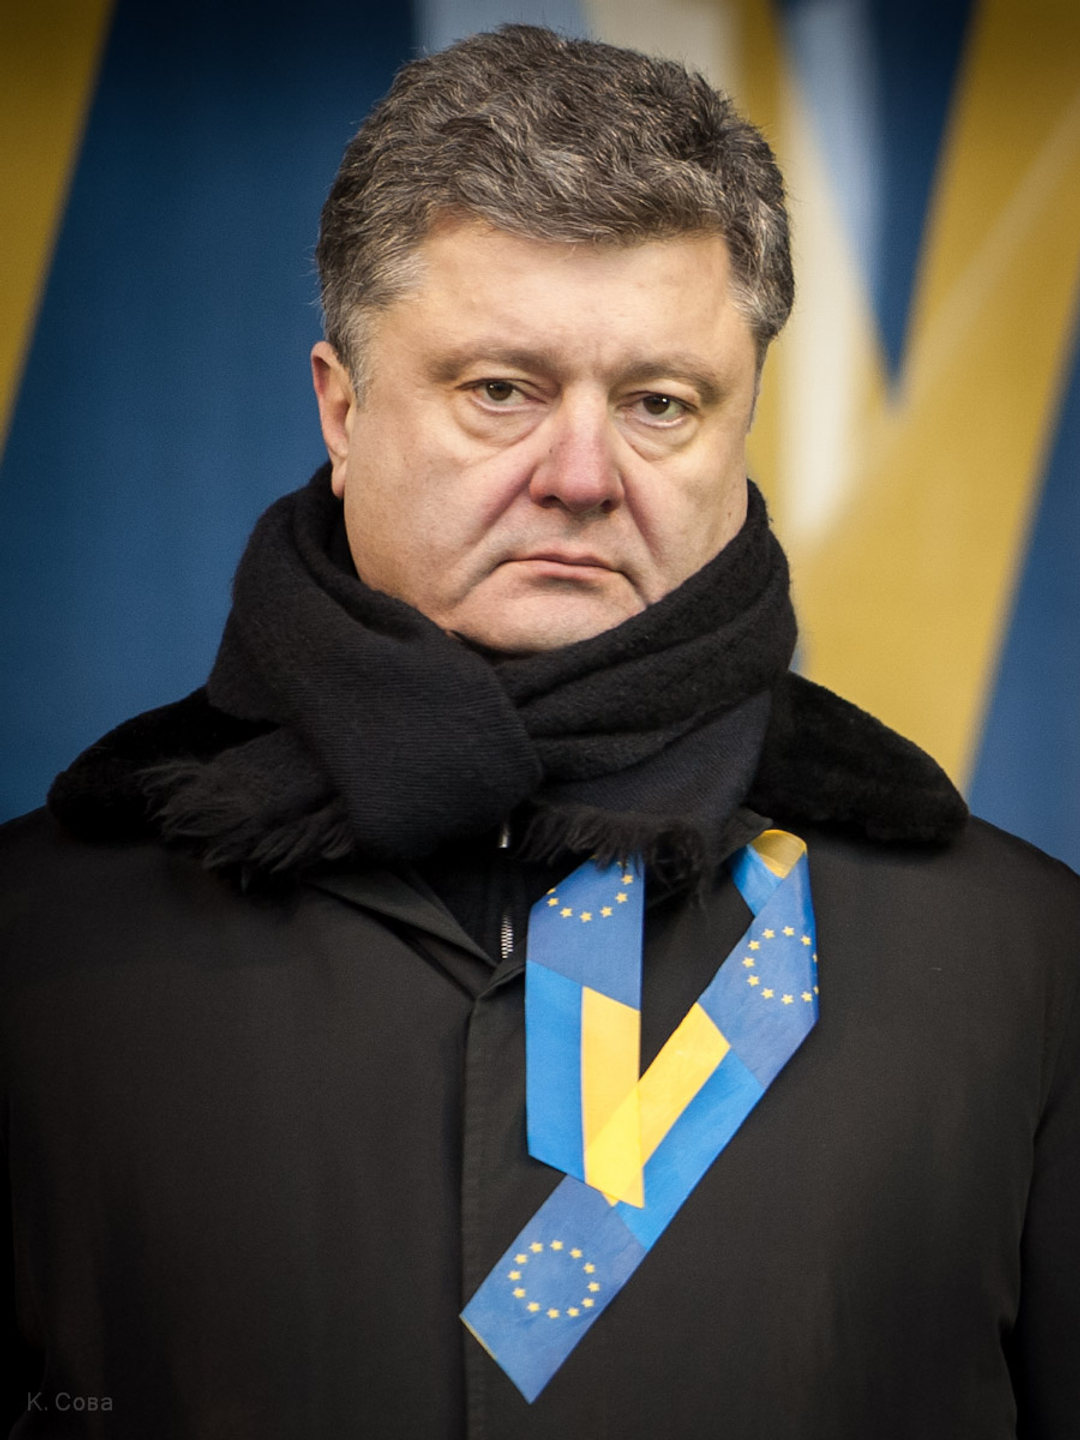 Petro Poroshenko in real life